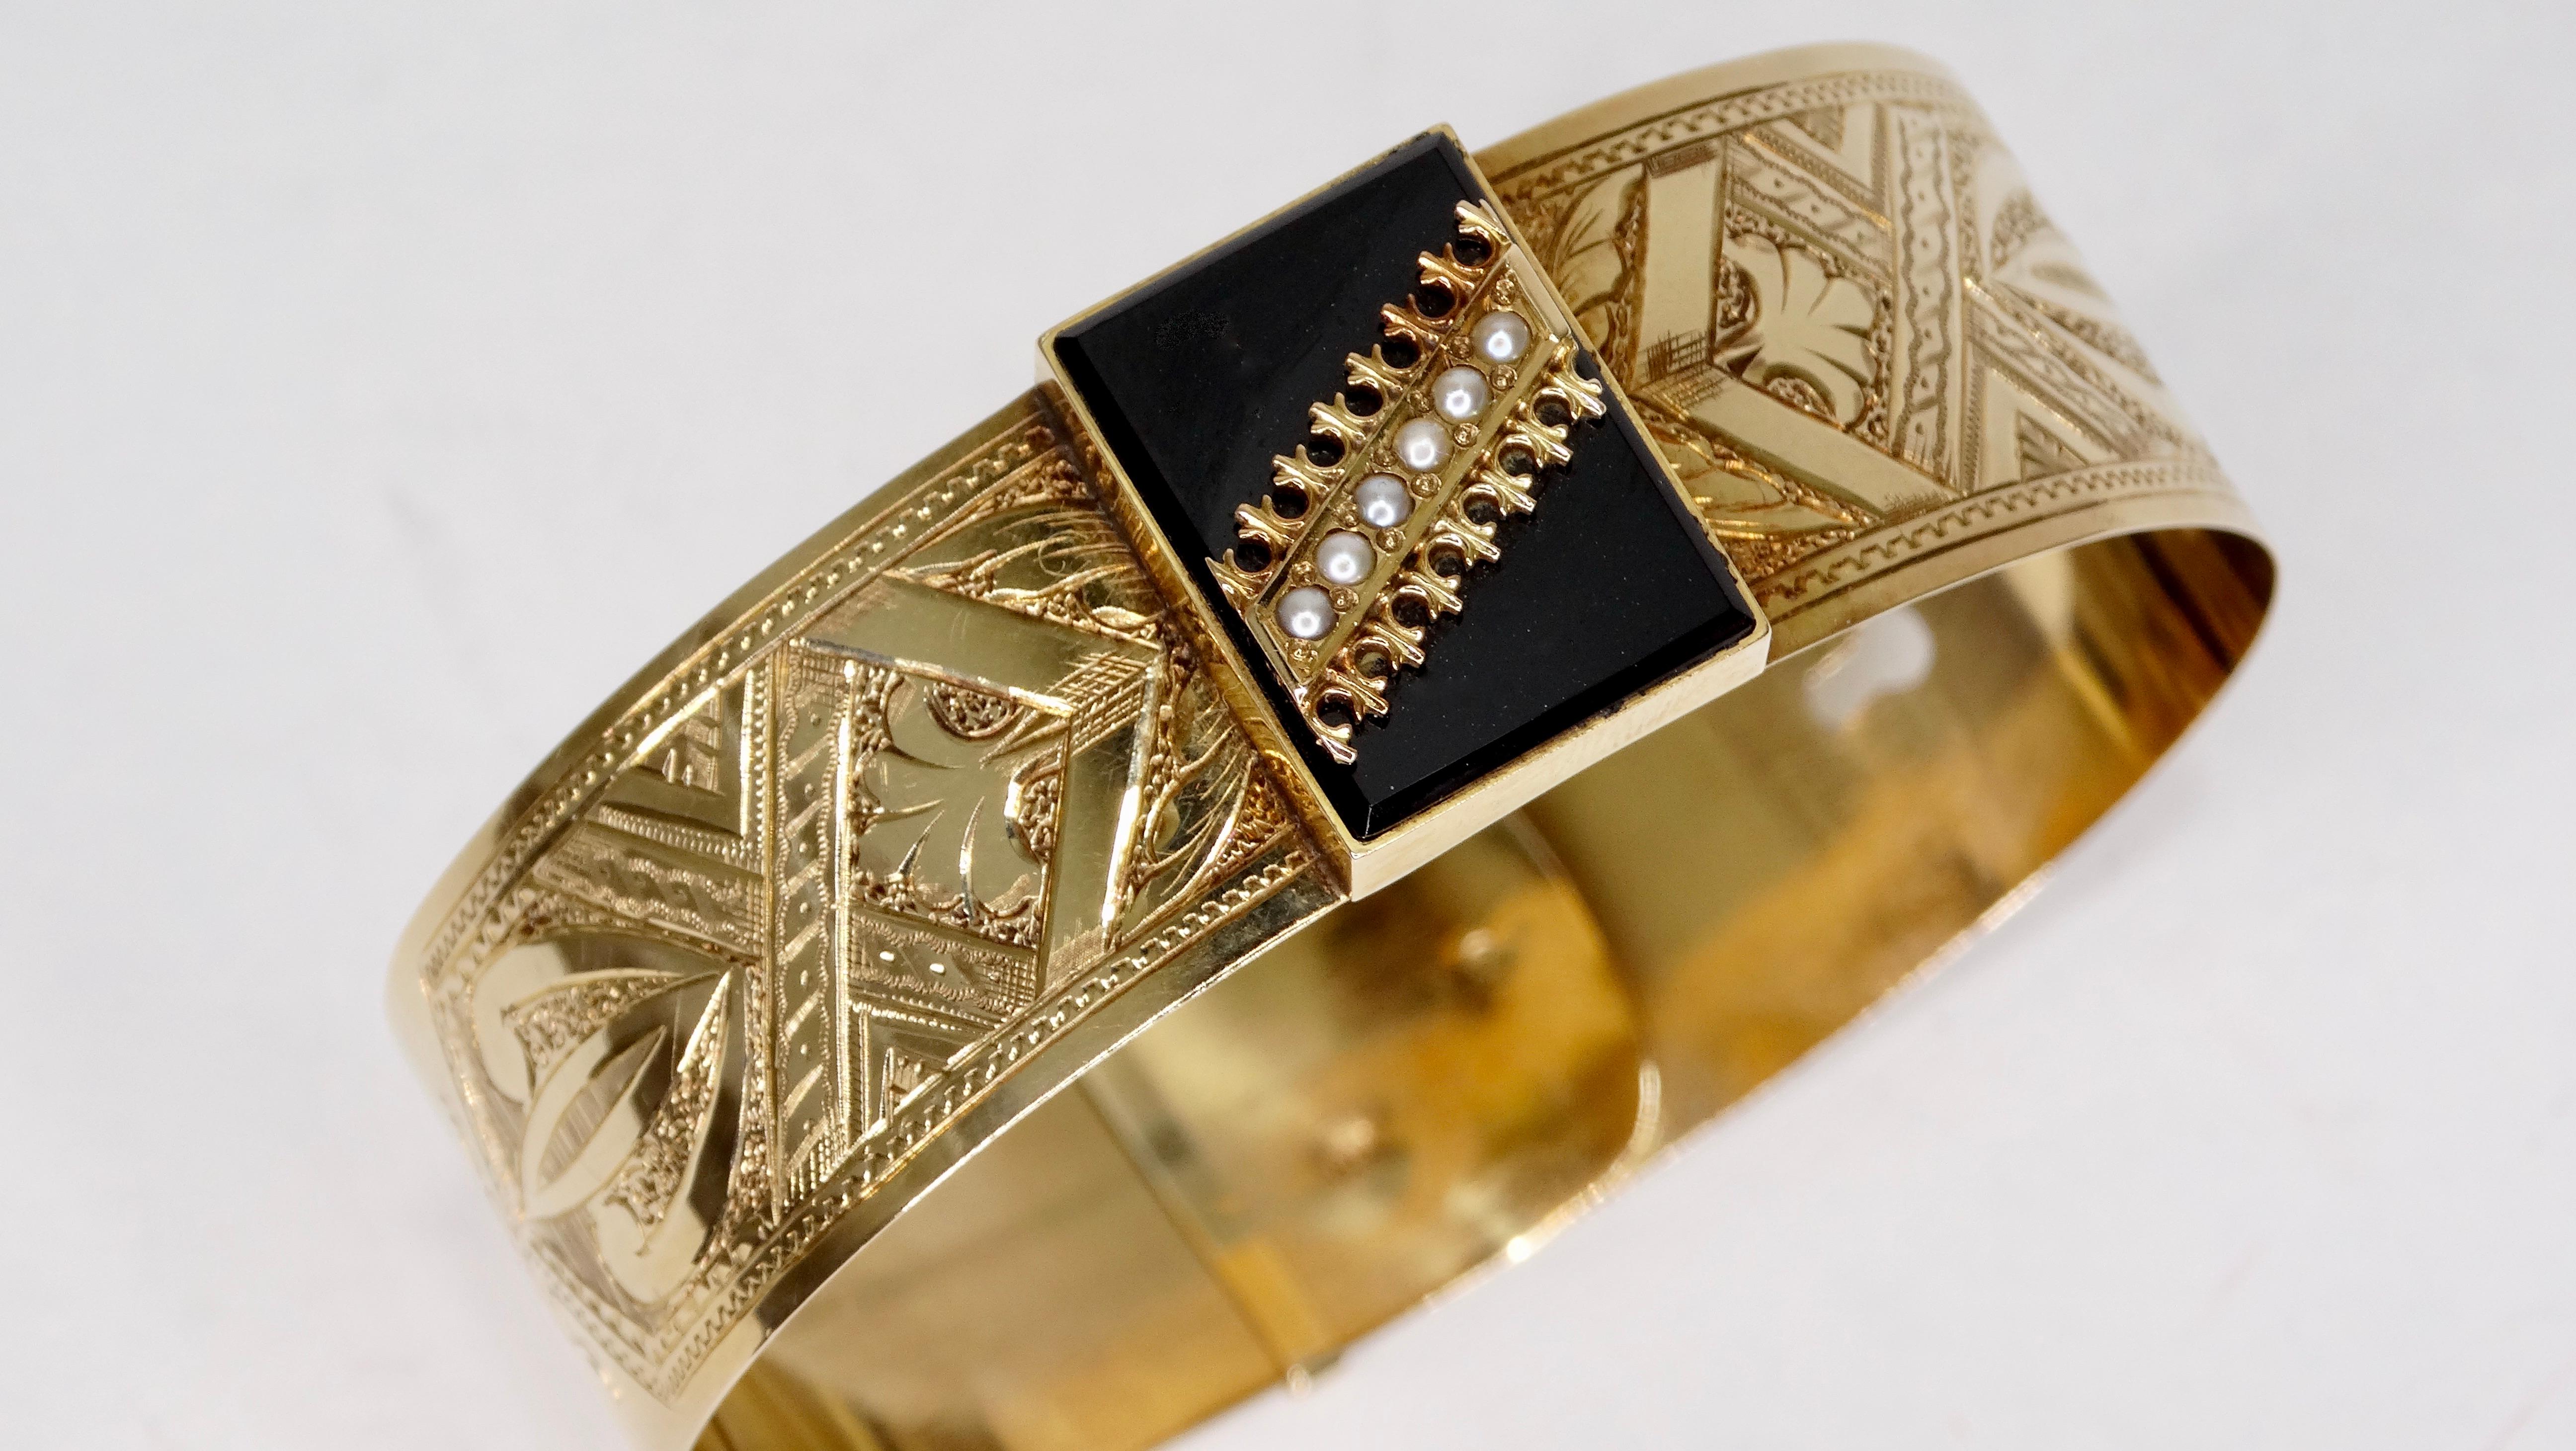 Wunderschönes viktorianisches 14-karätiges Goldarmband aus den 1920er Jahren, geprägt mit einem detaillierten Motiv und geschmückt mit einem quadratisch geschliffenen Onyx-Mittelstein. Sechs Mini-Perlen in einer dekorativen Roségold-Fassung säumen